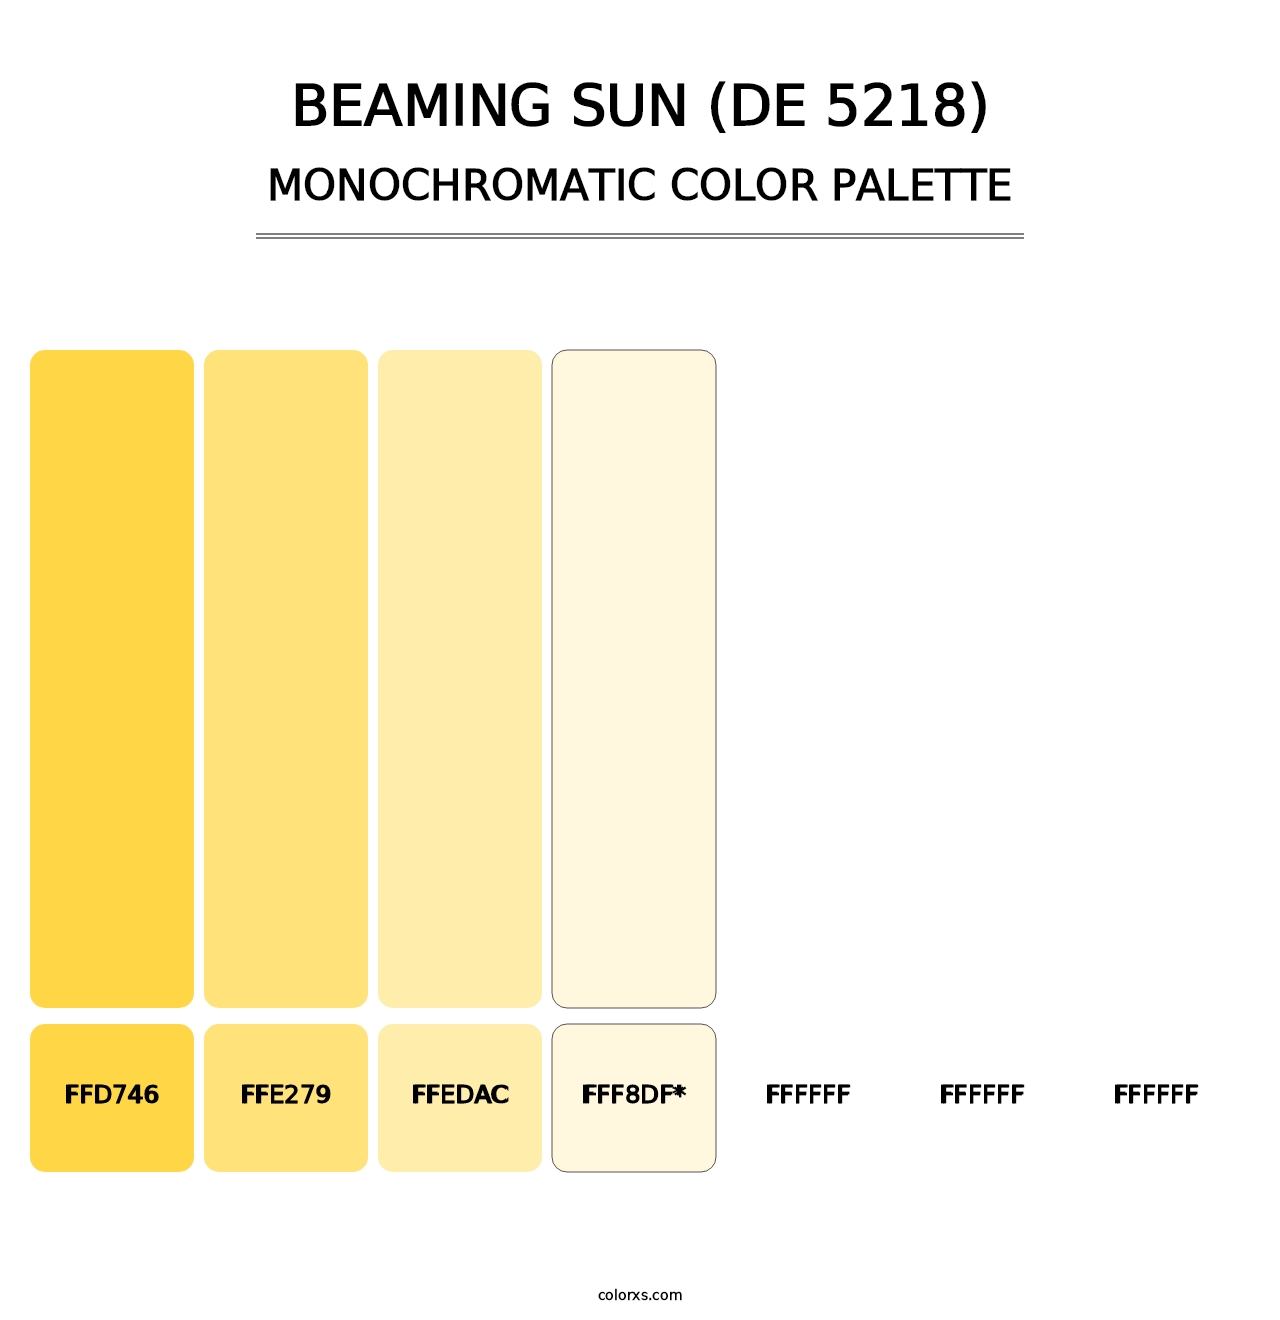 Beaming Sun (DE 5218) - Monochromatic Color Palette